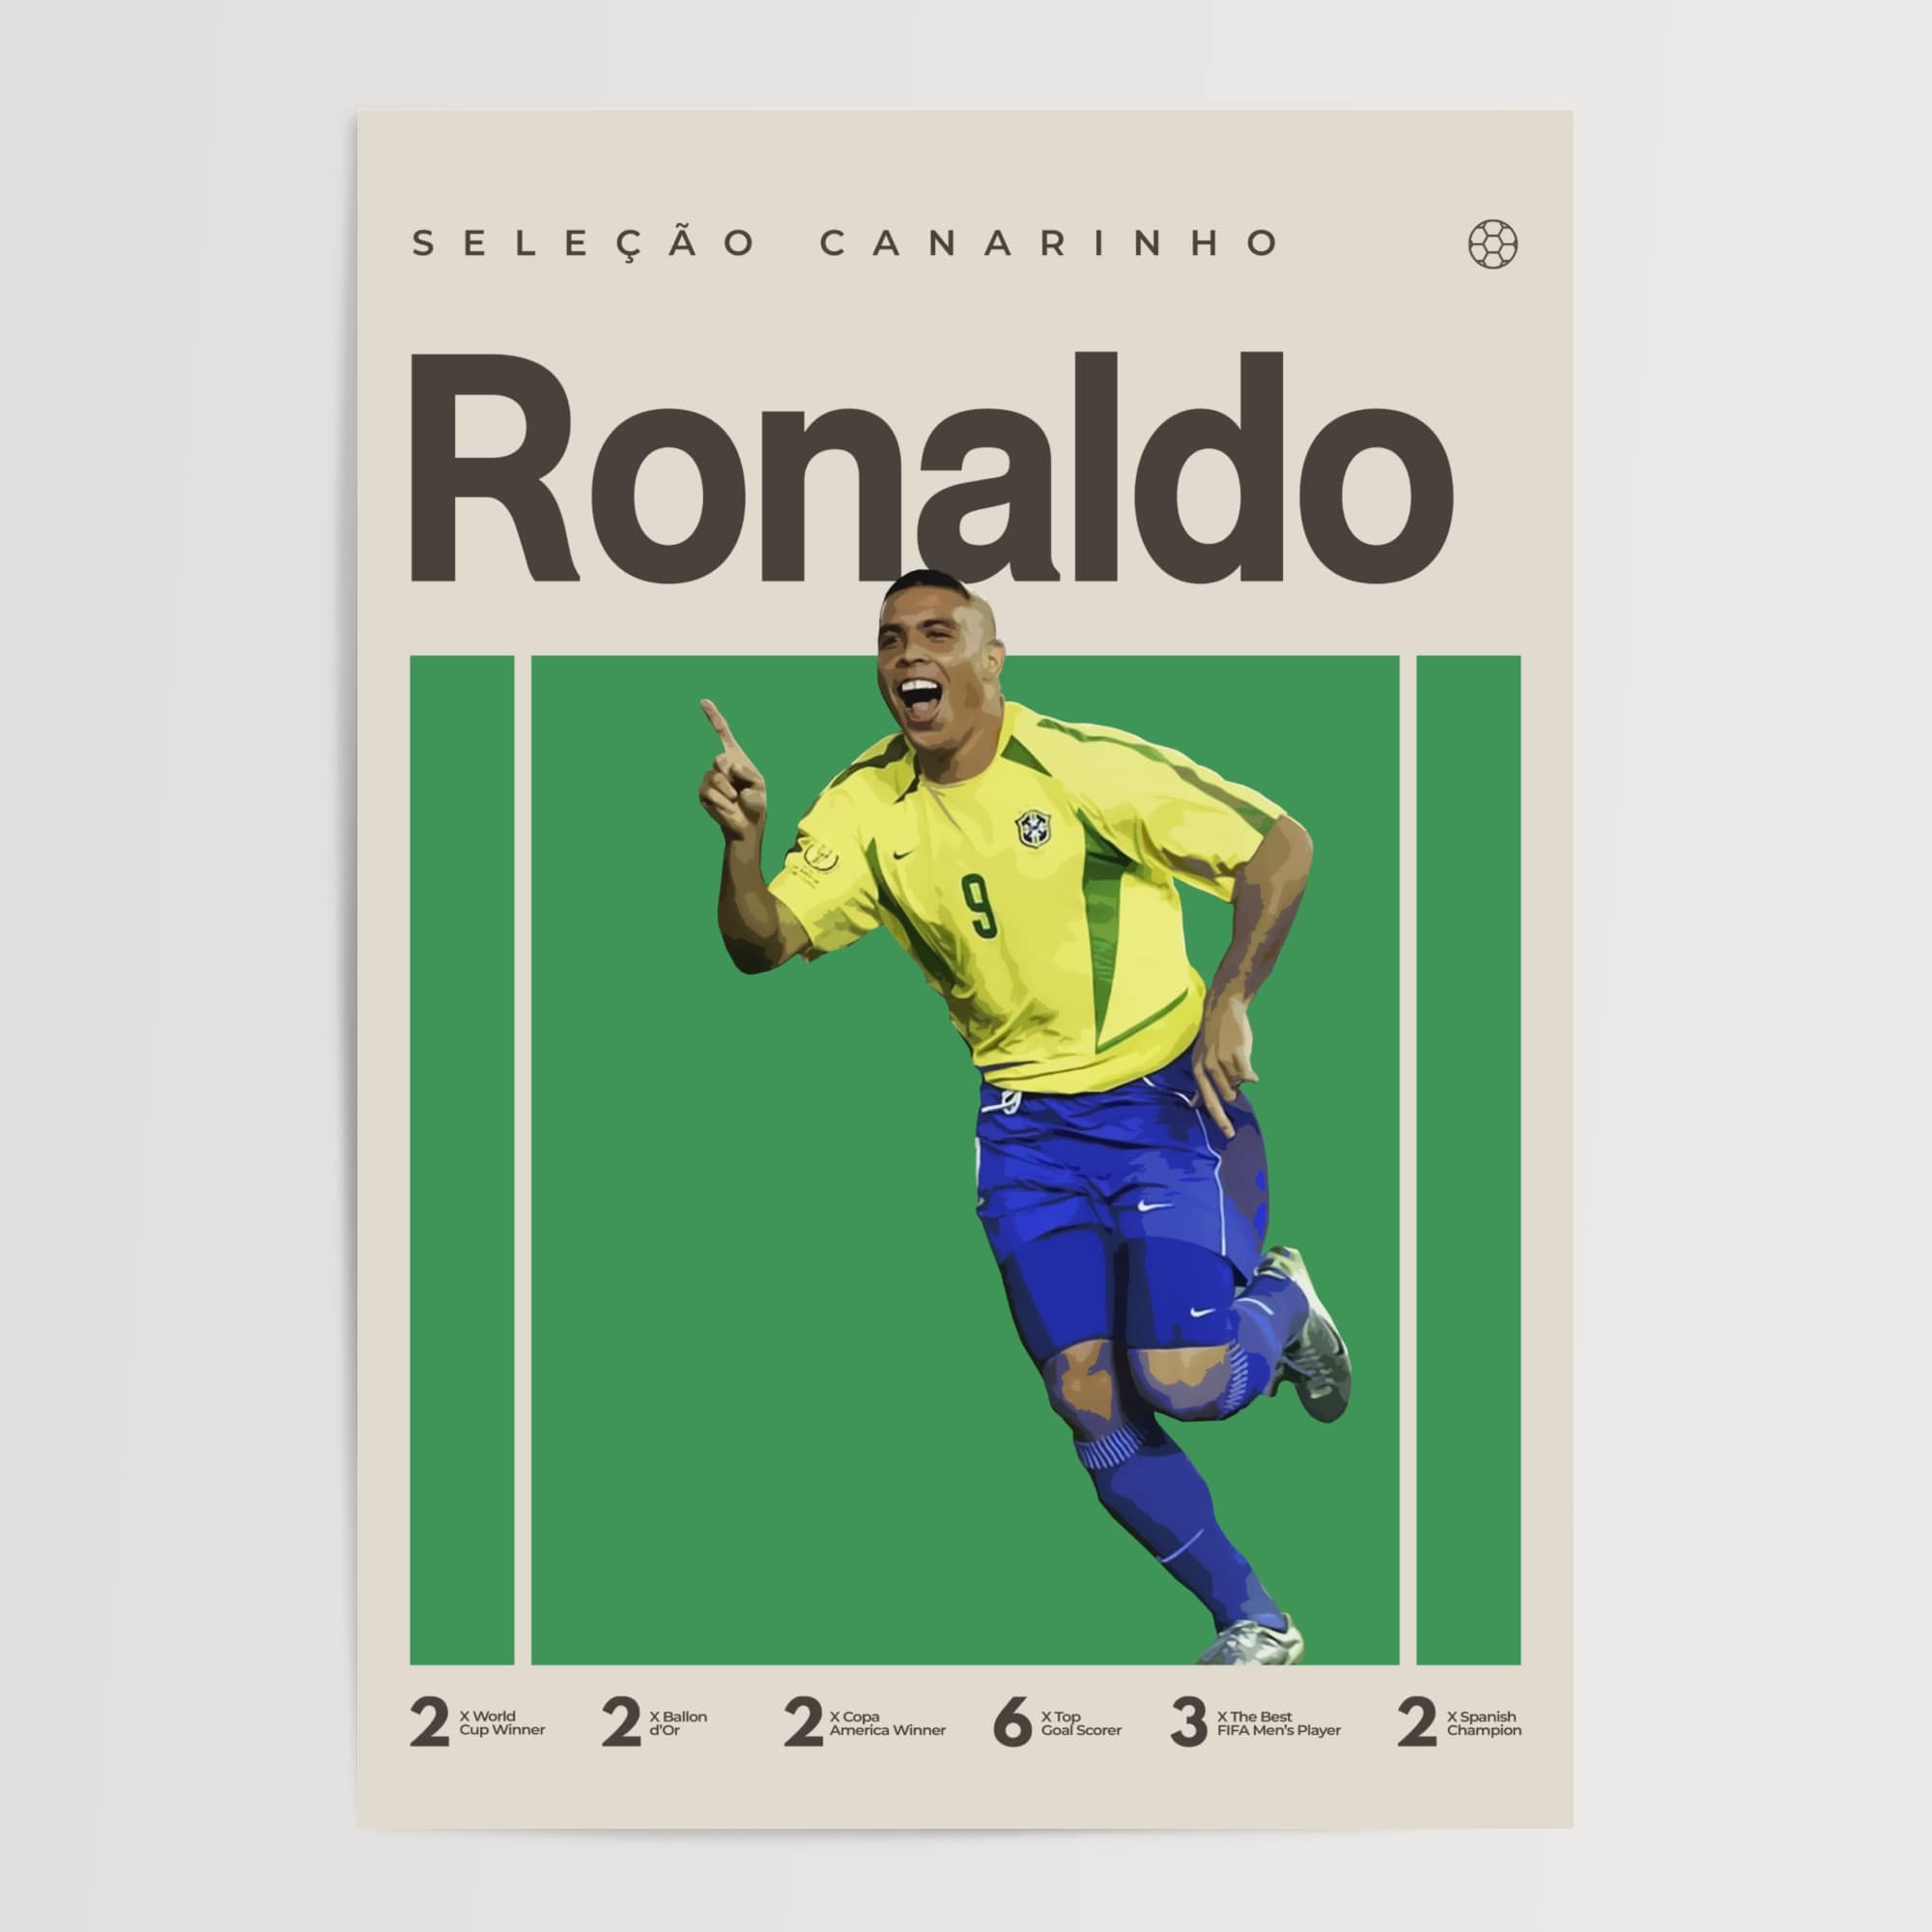 Ronaldo Nazário Poster, Brazil